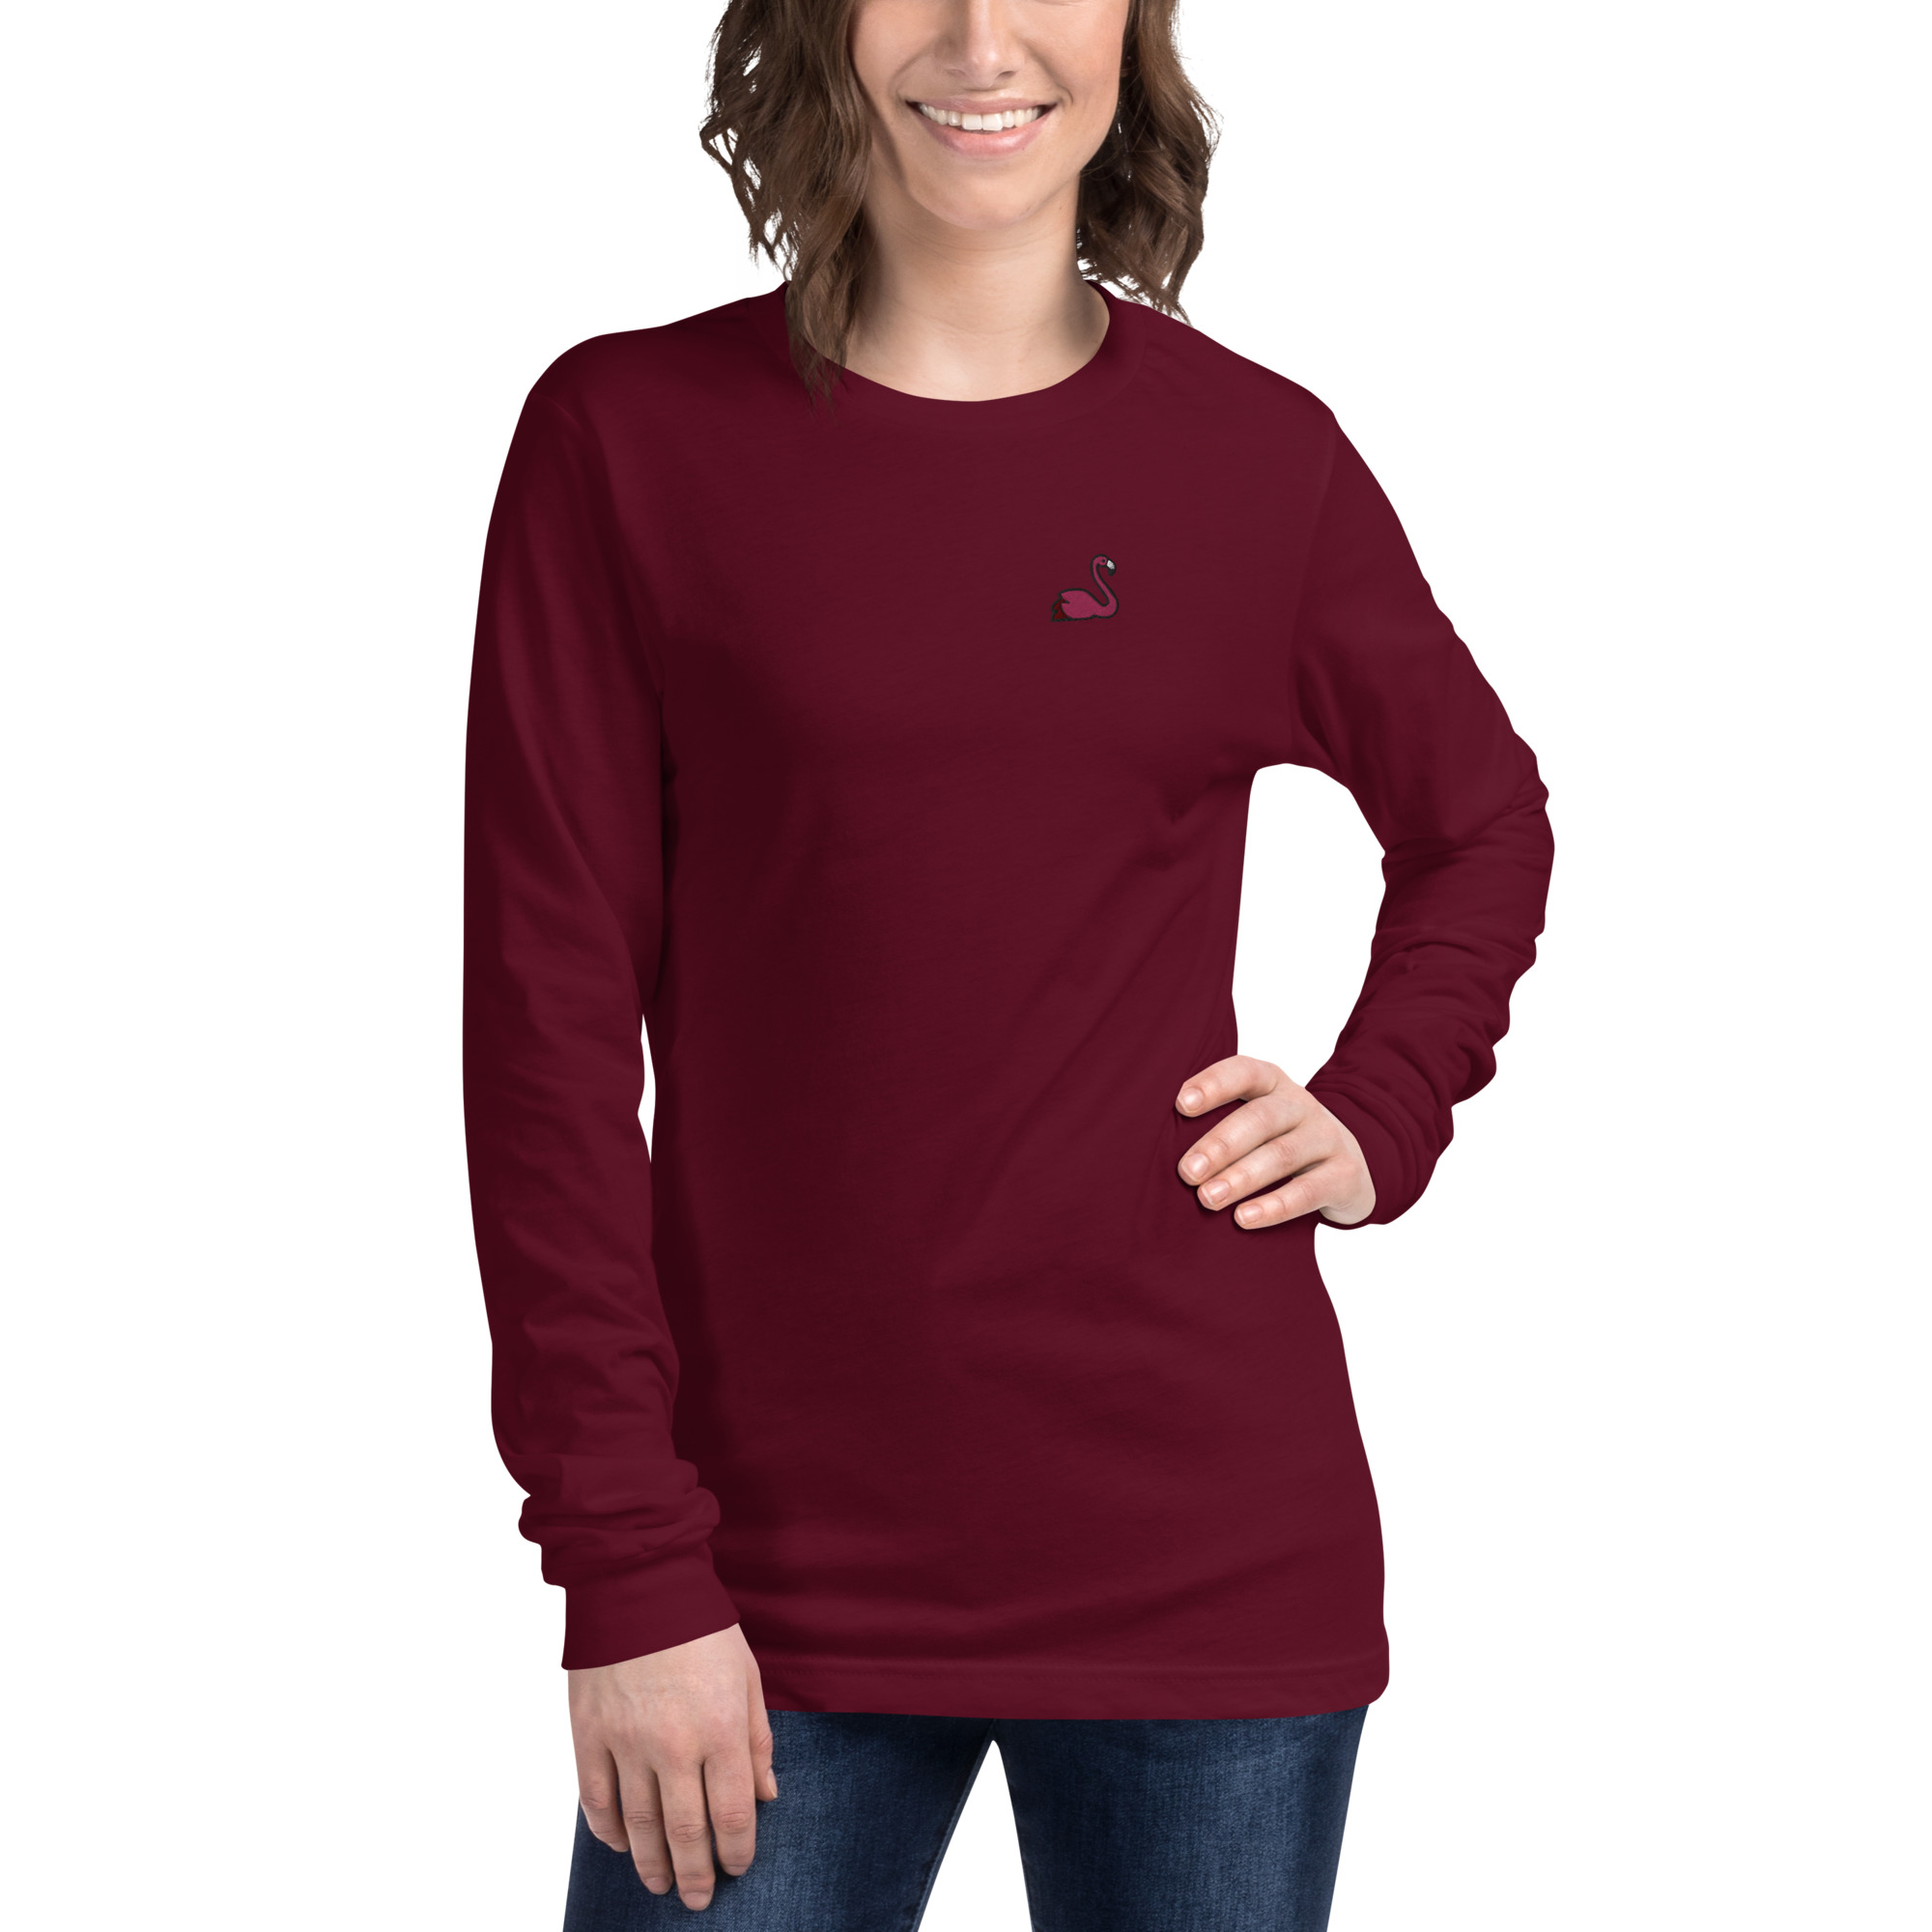 Fabulous Flamingo Unisex Ultra Soft Long Sleeve T-Shirt 2